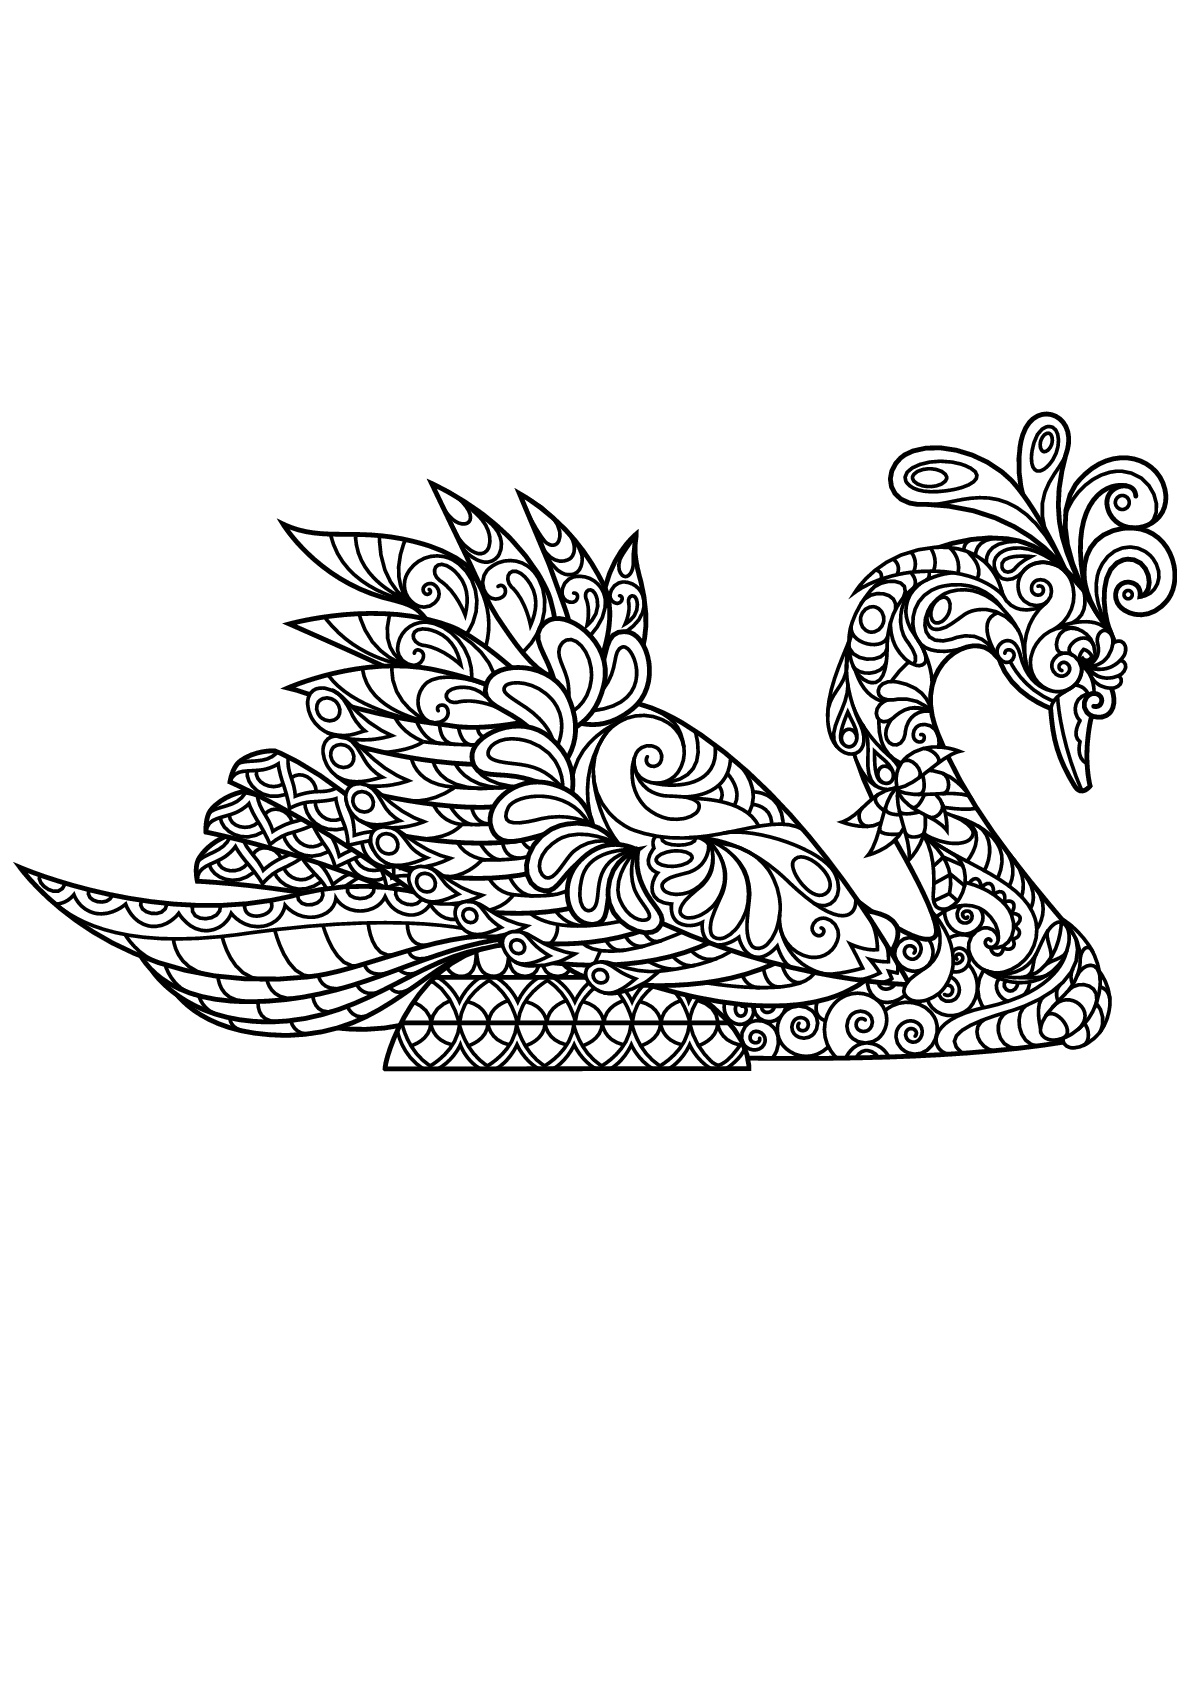 Coloring free book swan